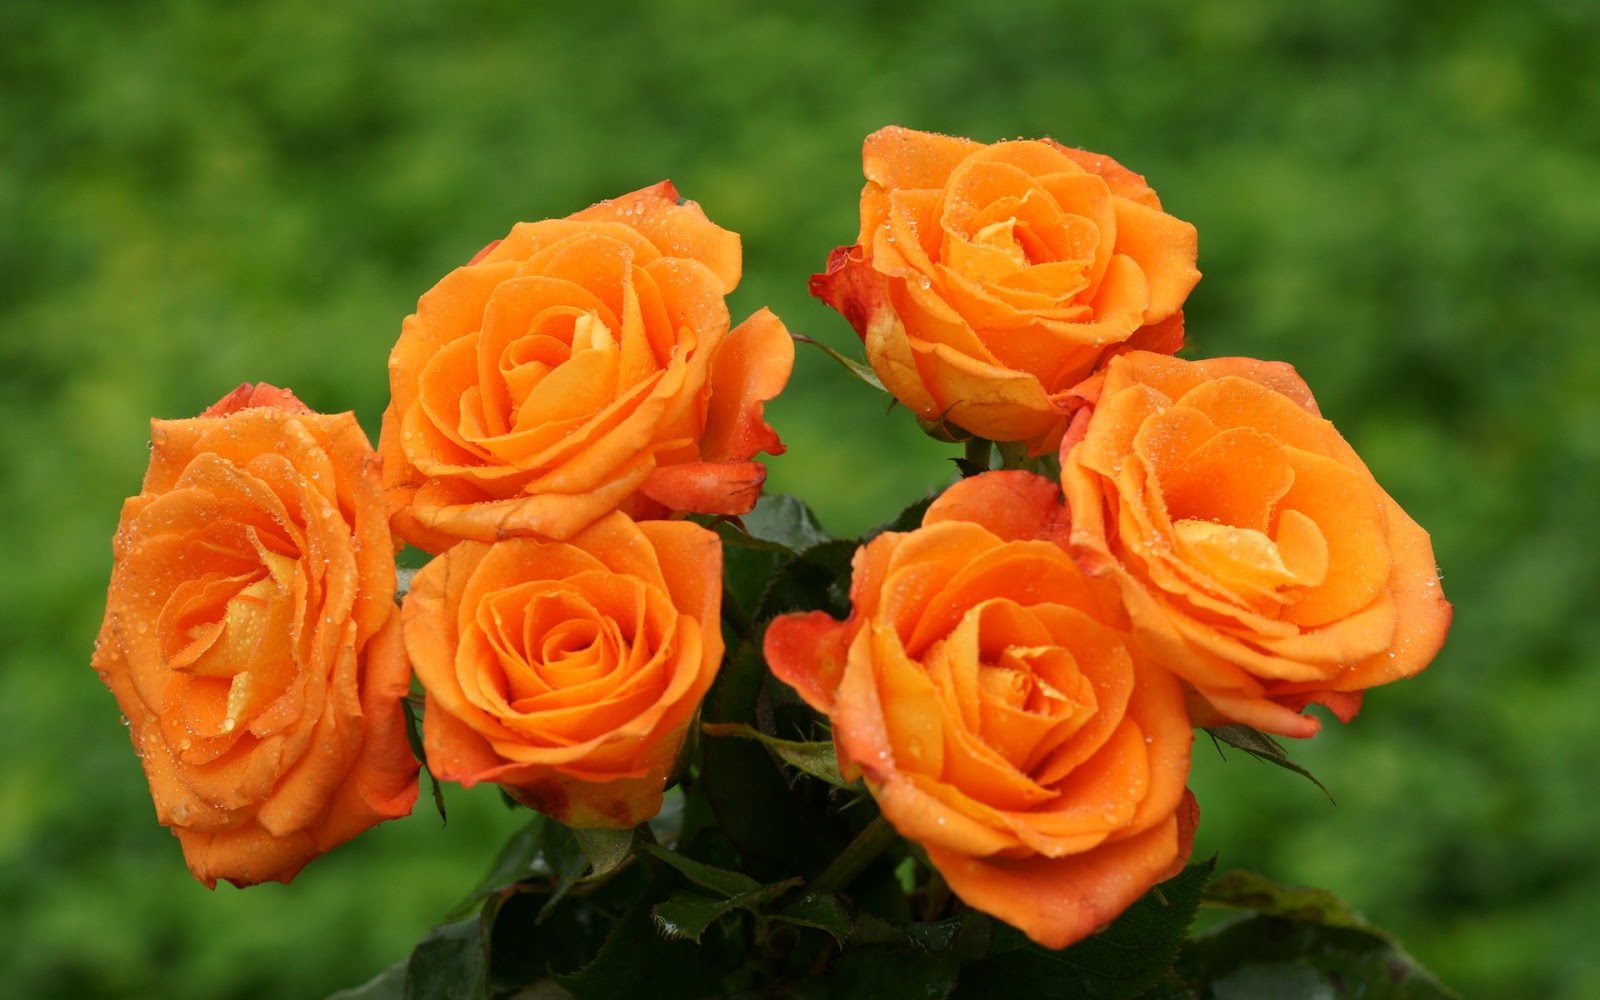 schöne rosentapete,blume,blühende pflanze,julia kind stand auf,gartenrosen,floribunda